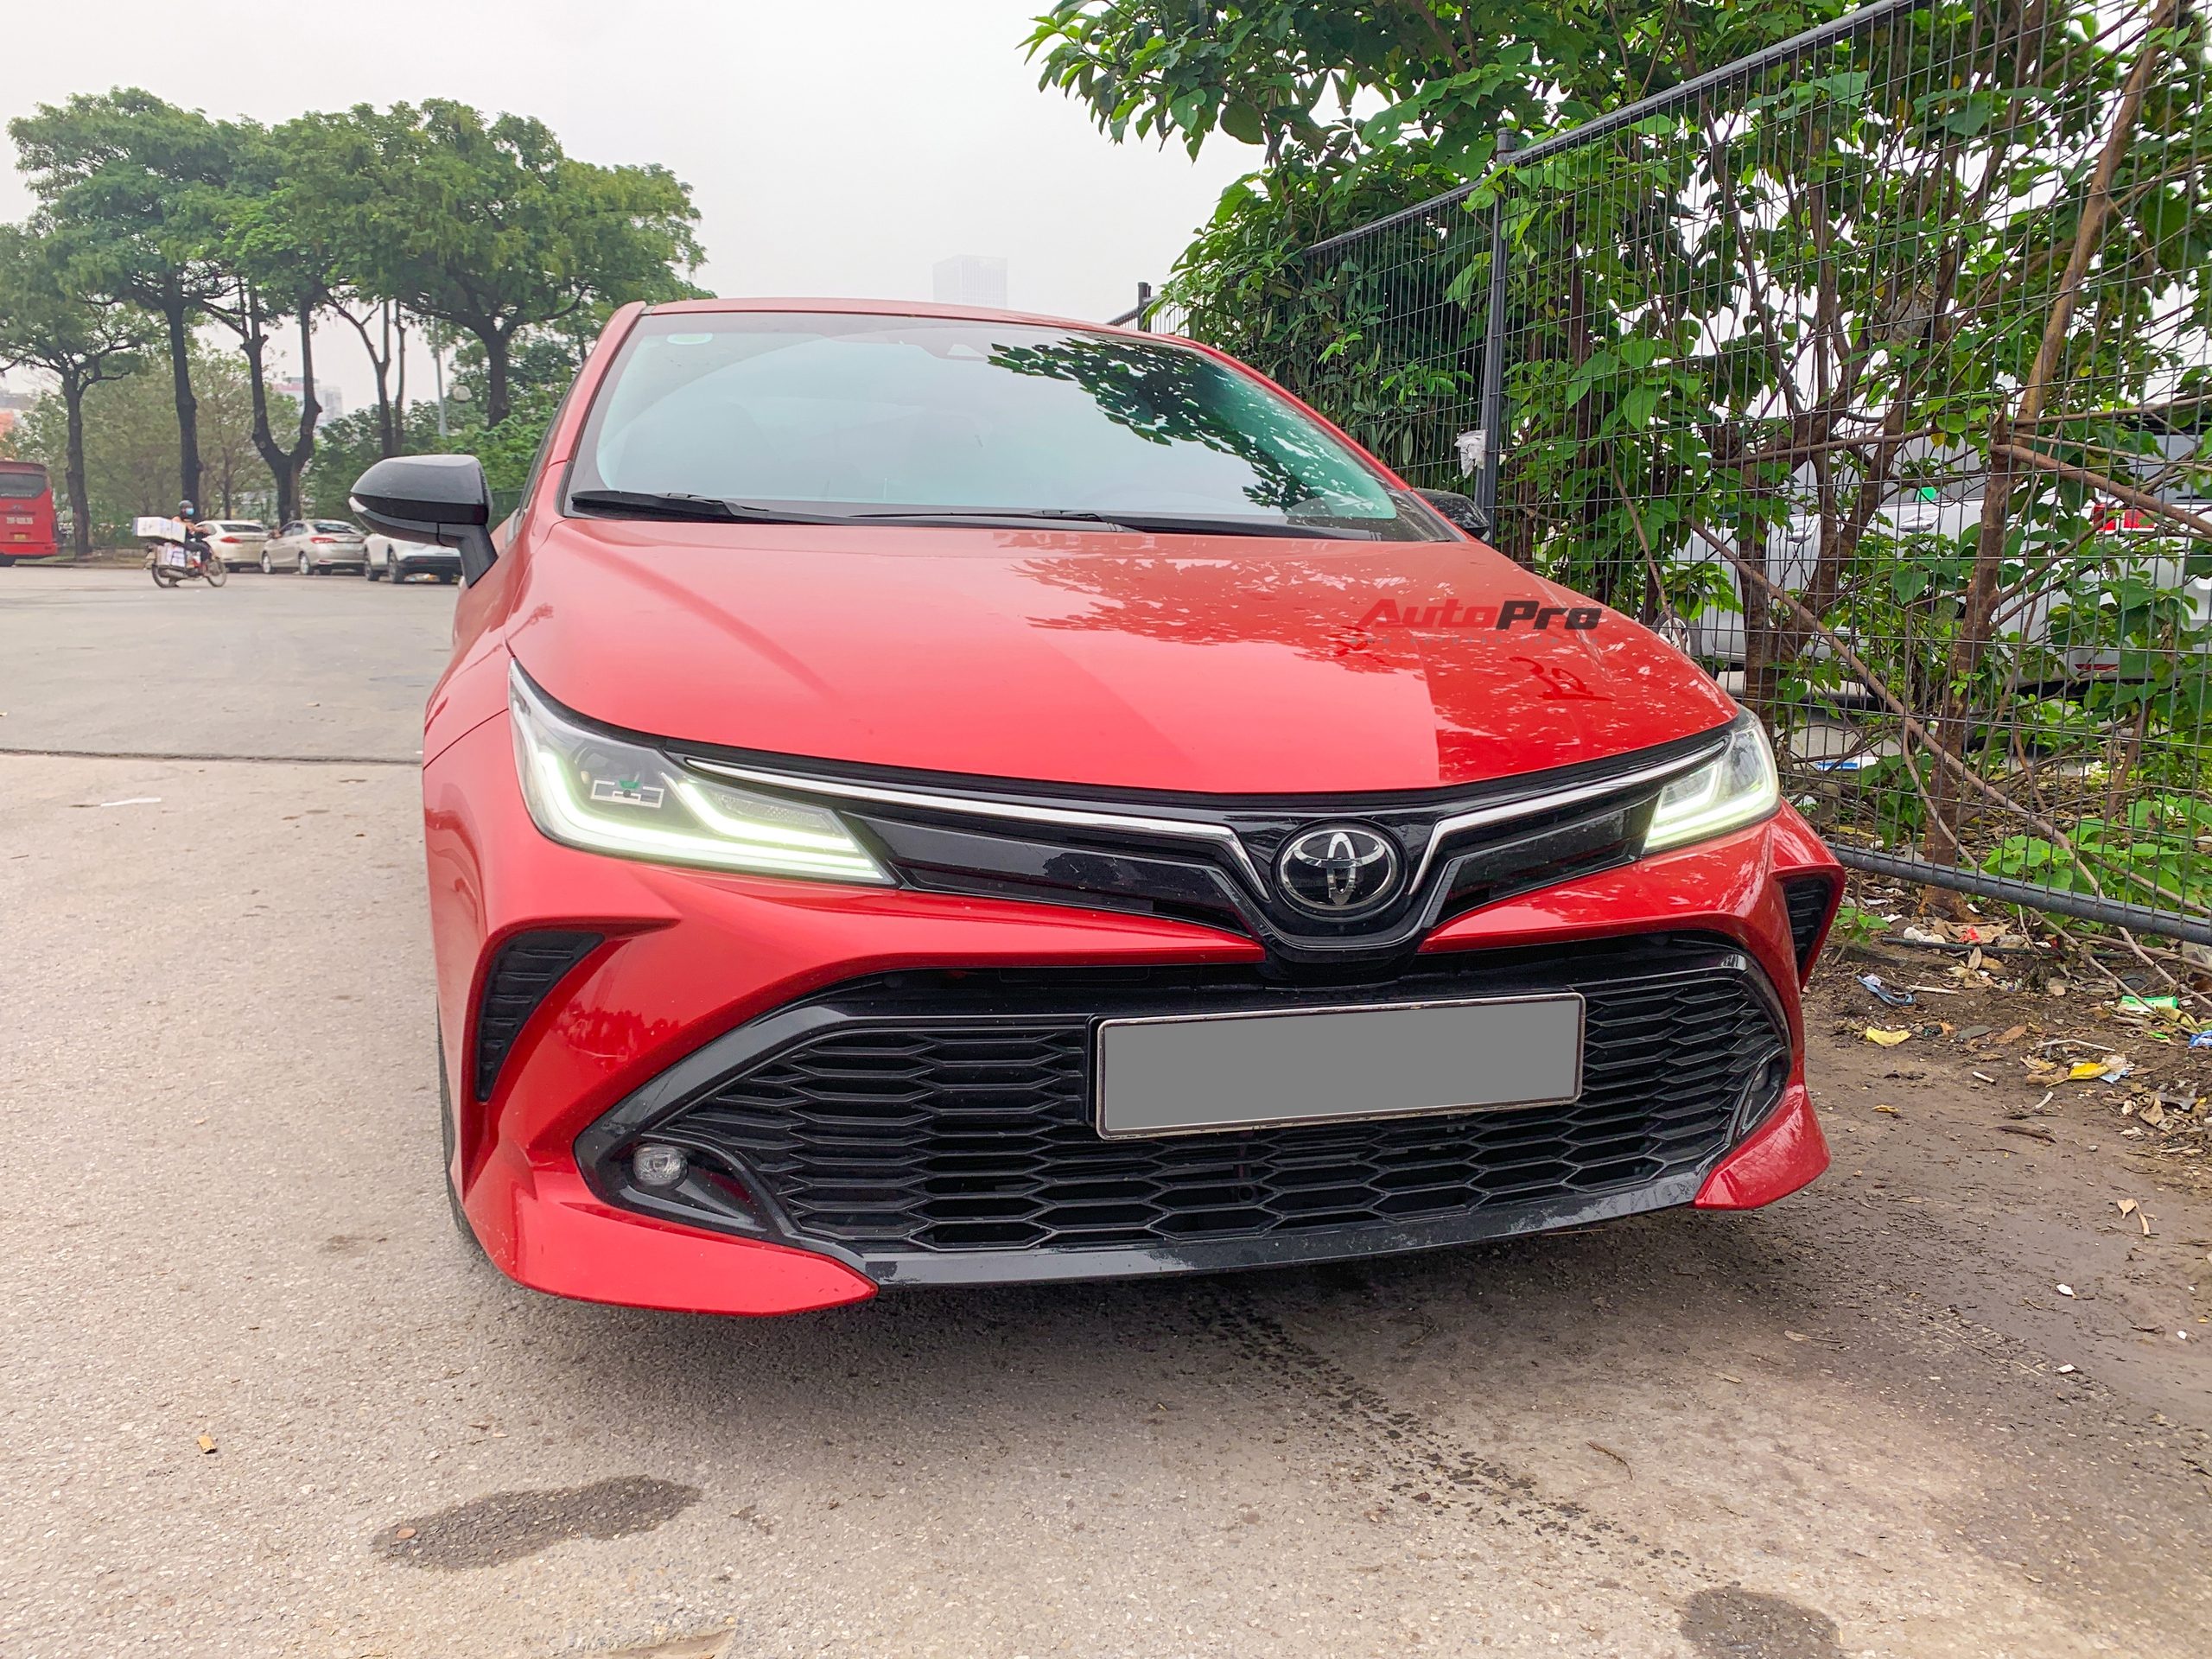 Toyota Corolla Altis GR Sport đầu tiên xuất hiện tại Việt Nam: Ngoại hình hầm hố khác hẳn phong cách ‘doanh nhân’, đấu Civic RS - ảnh 6